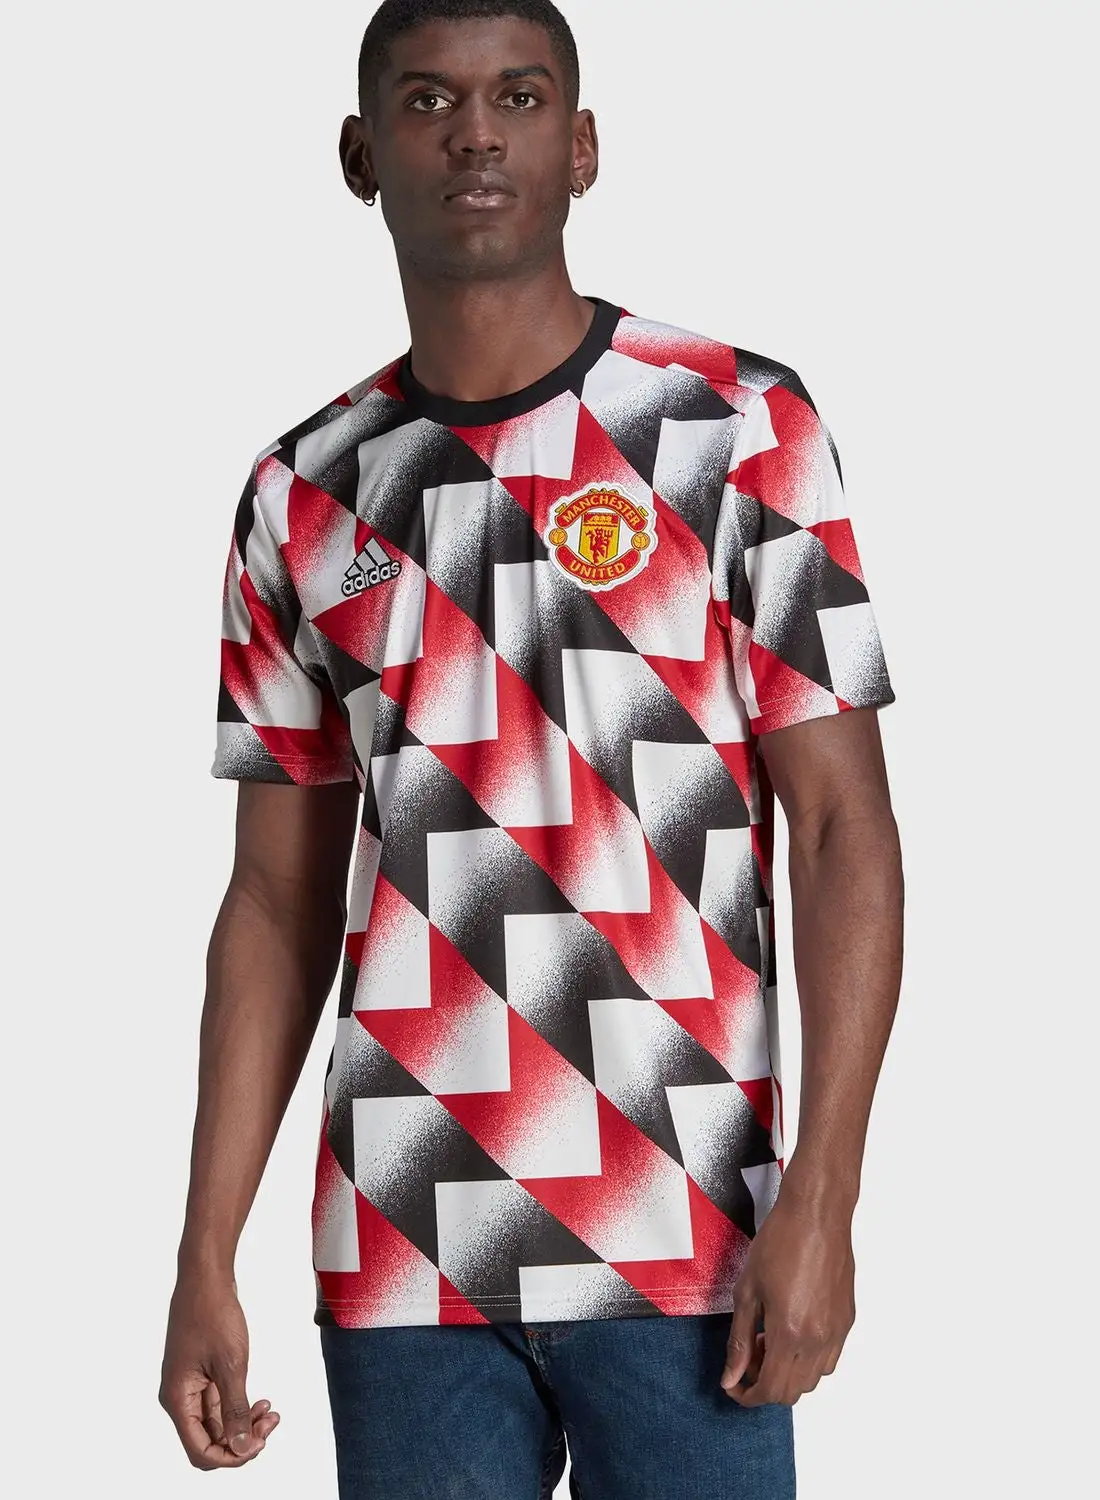 Adidas Man Utd Preshi T-Shirt